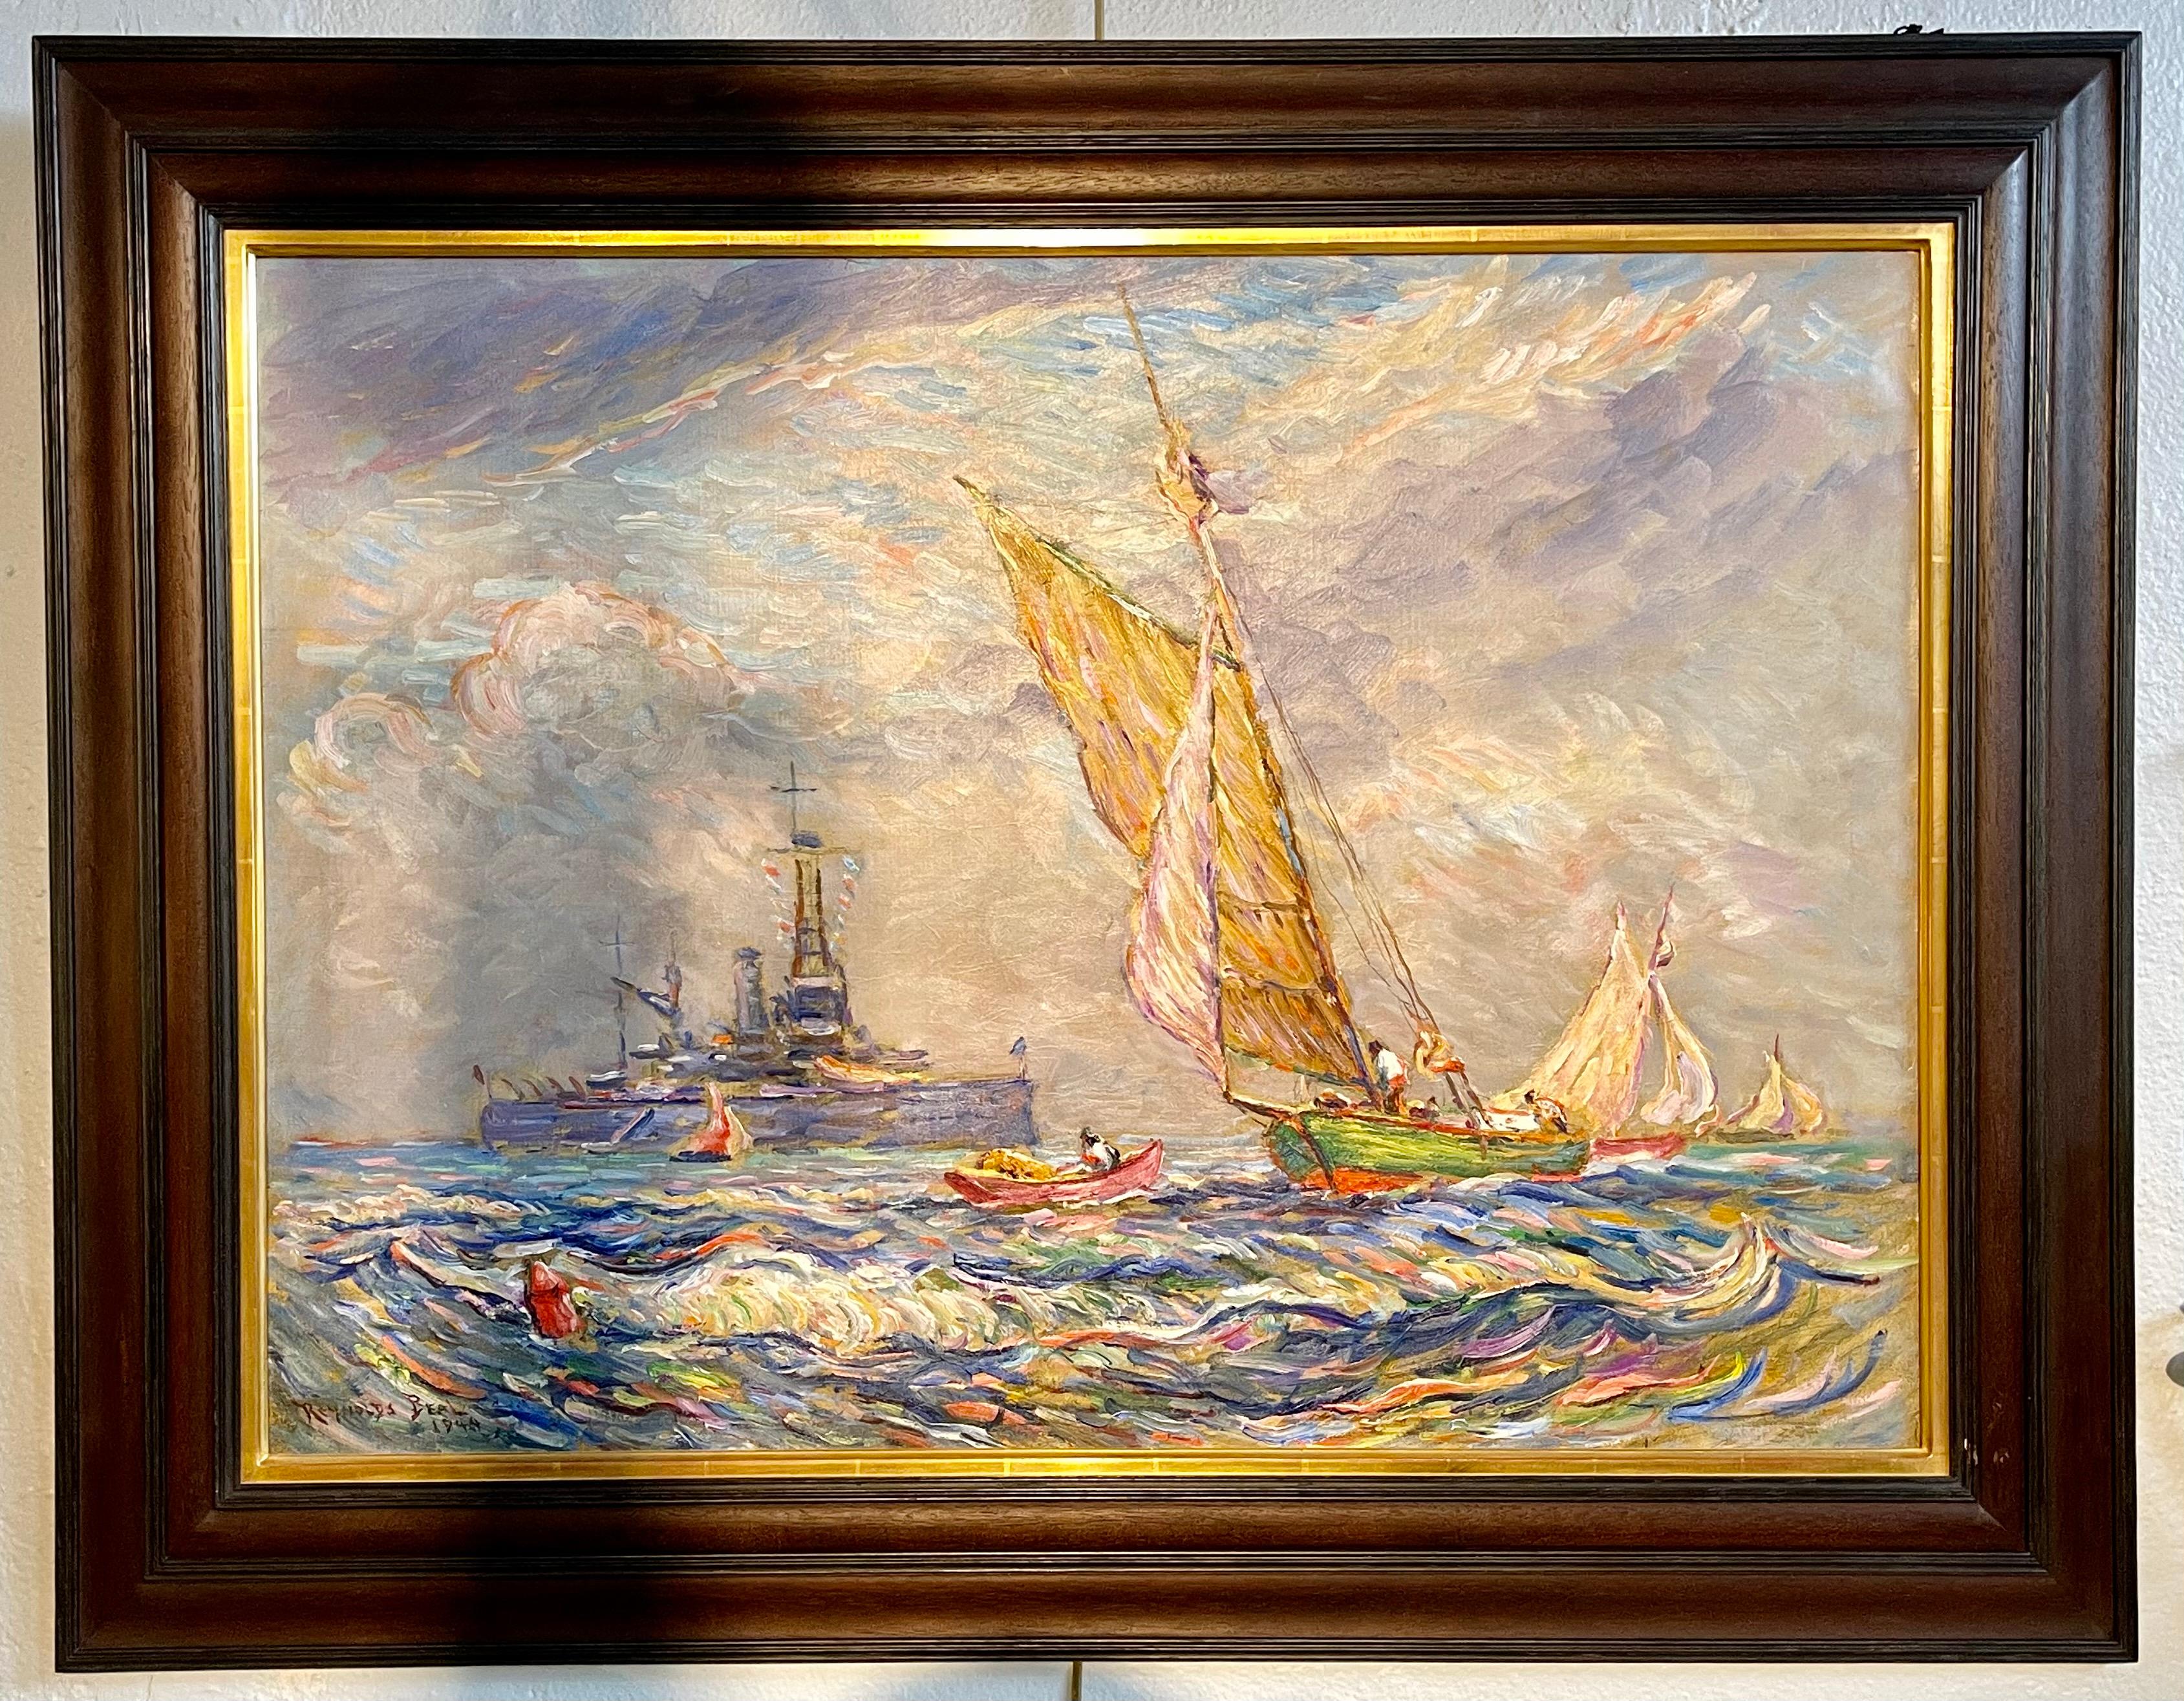 Ein feines impressionistisches Öl auf Leinwand von dem berühmten Reynolds Beal. Verso datiert 1928 und signiert. Auf der Rückseite sind der Nachlassstempel und die Katalogseite angegeben. Die USS Utah in Rockport Mass. In ausgezeichnetem Zustand.